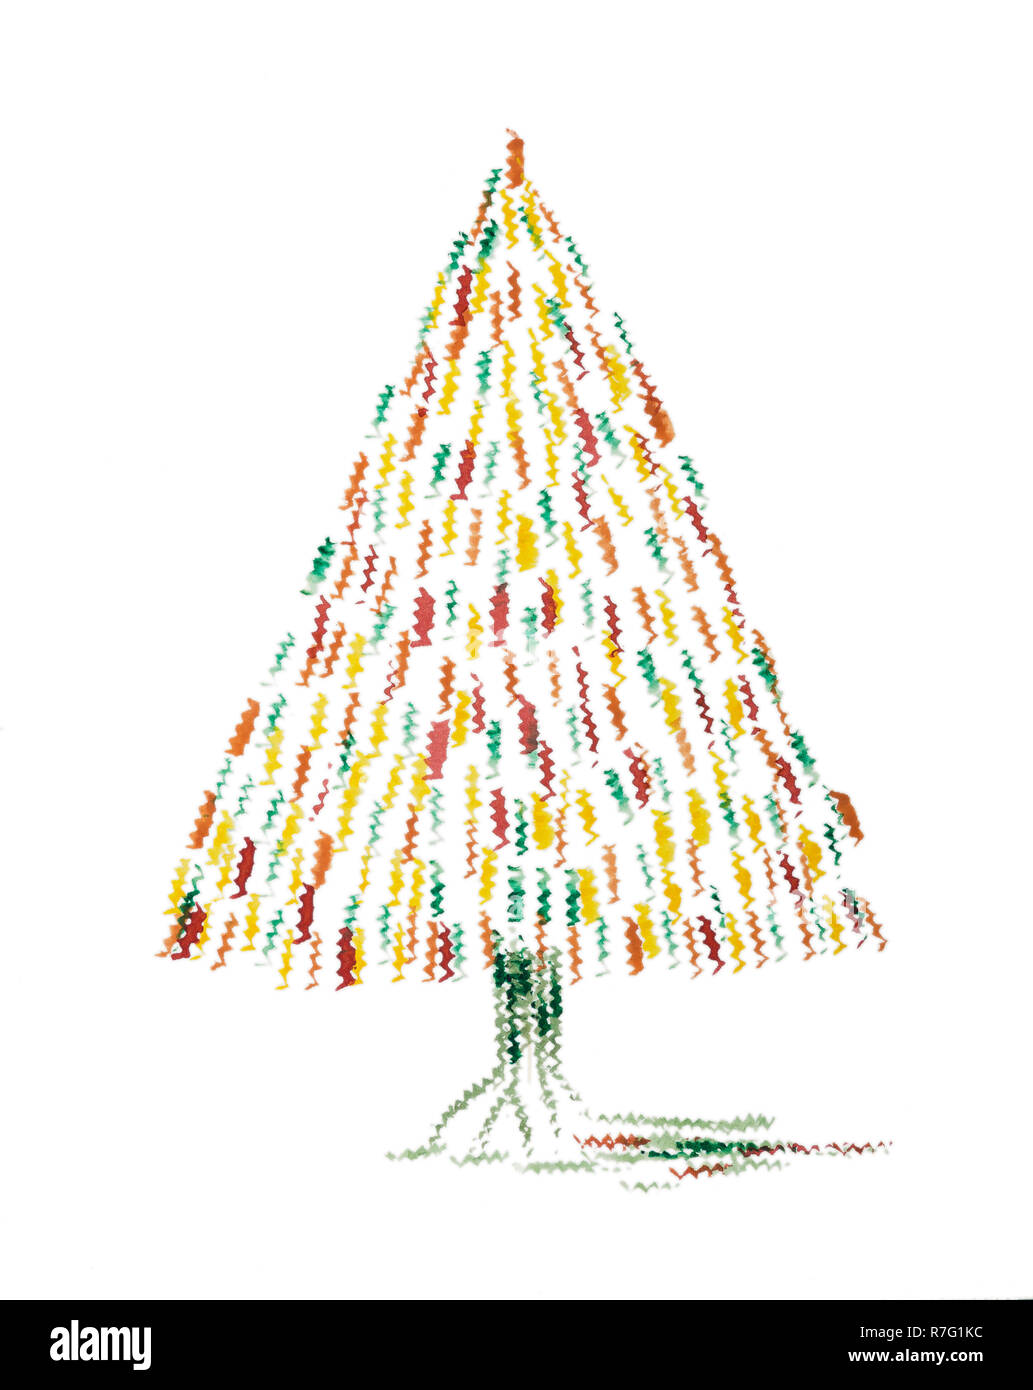 Résumé de l'arbre de Noël lunatique. La technique du badigeonnage près des bords donne un effet de flou en raison de la modification de la rugosité de surface du papier. Banque D'Images